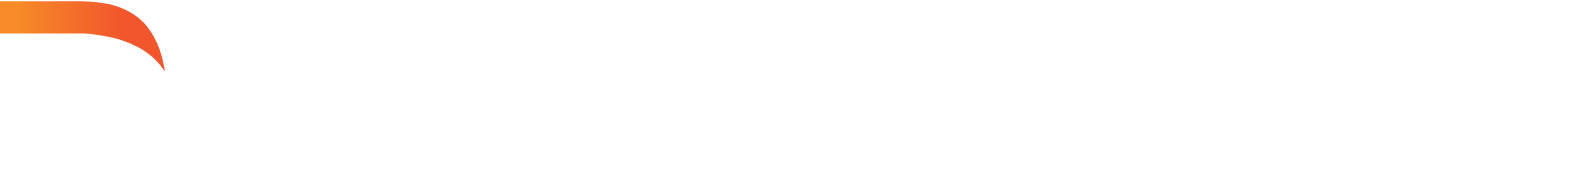 Darktrace logo grand pour les fonds sombres (PNG transparent)